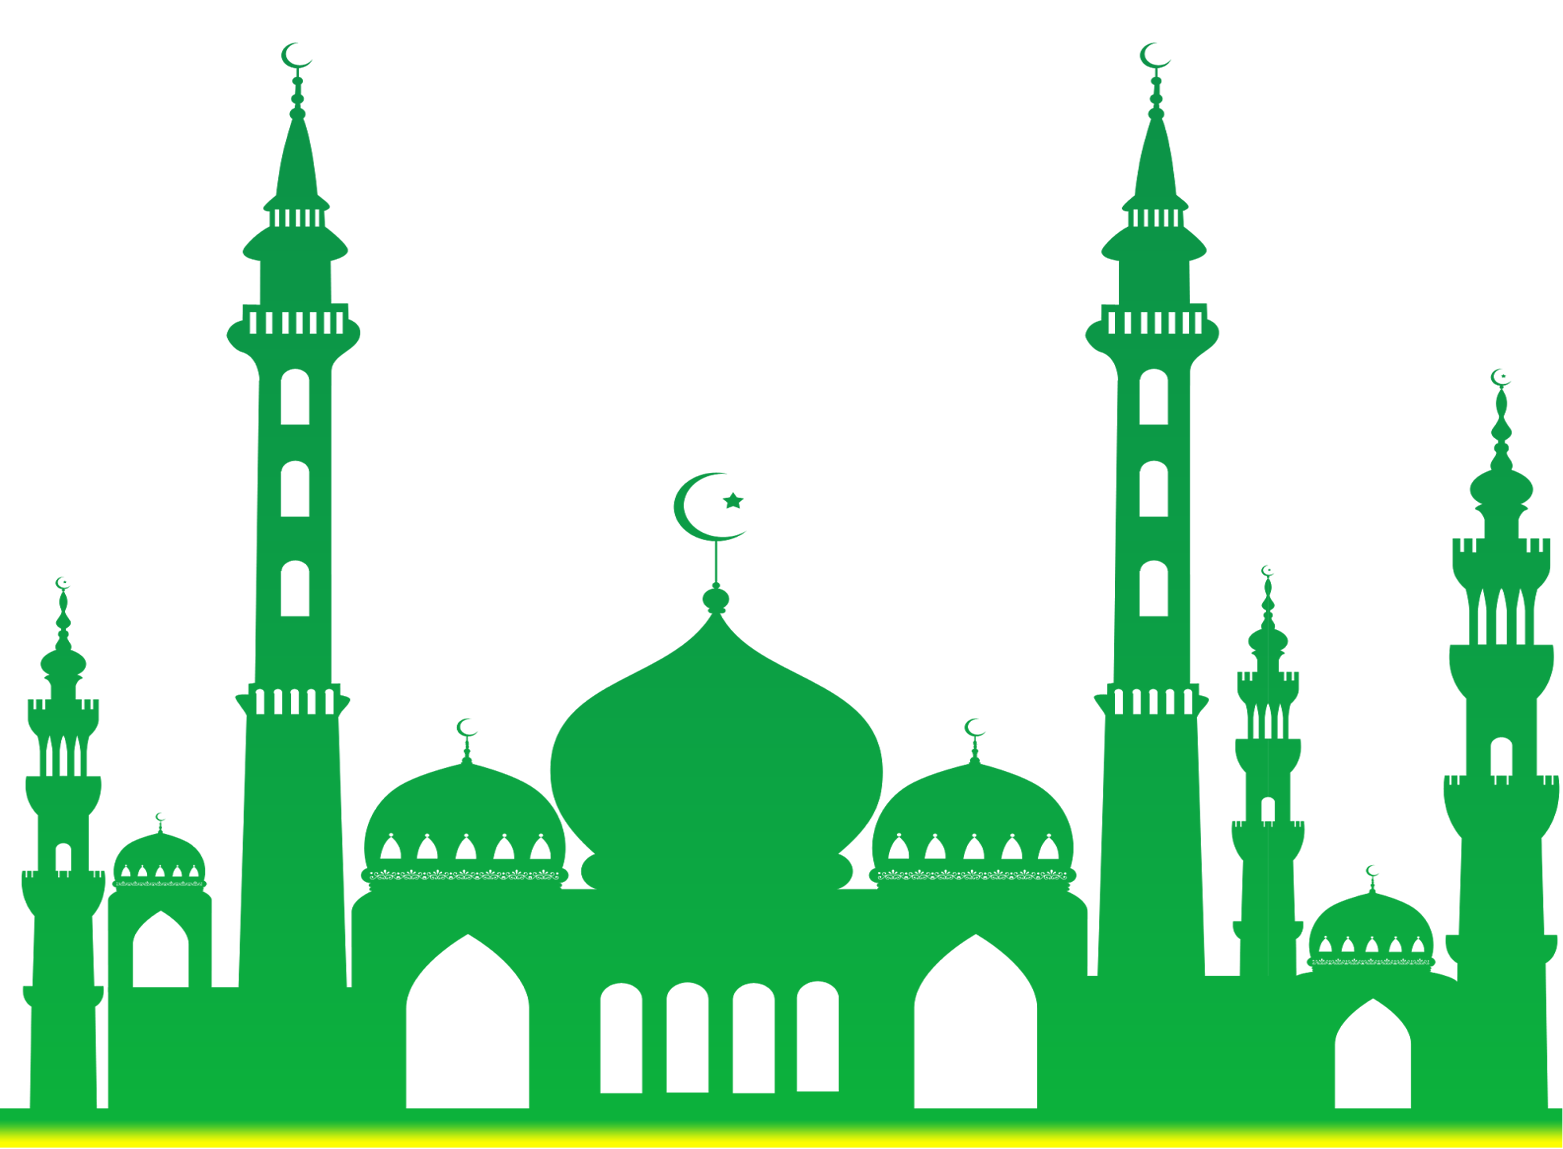 Мечеть клипарт